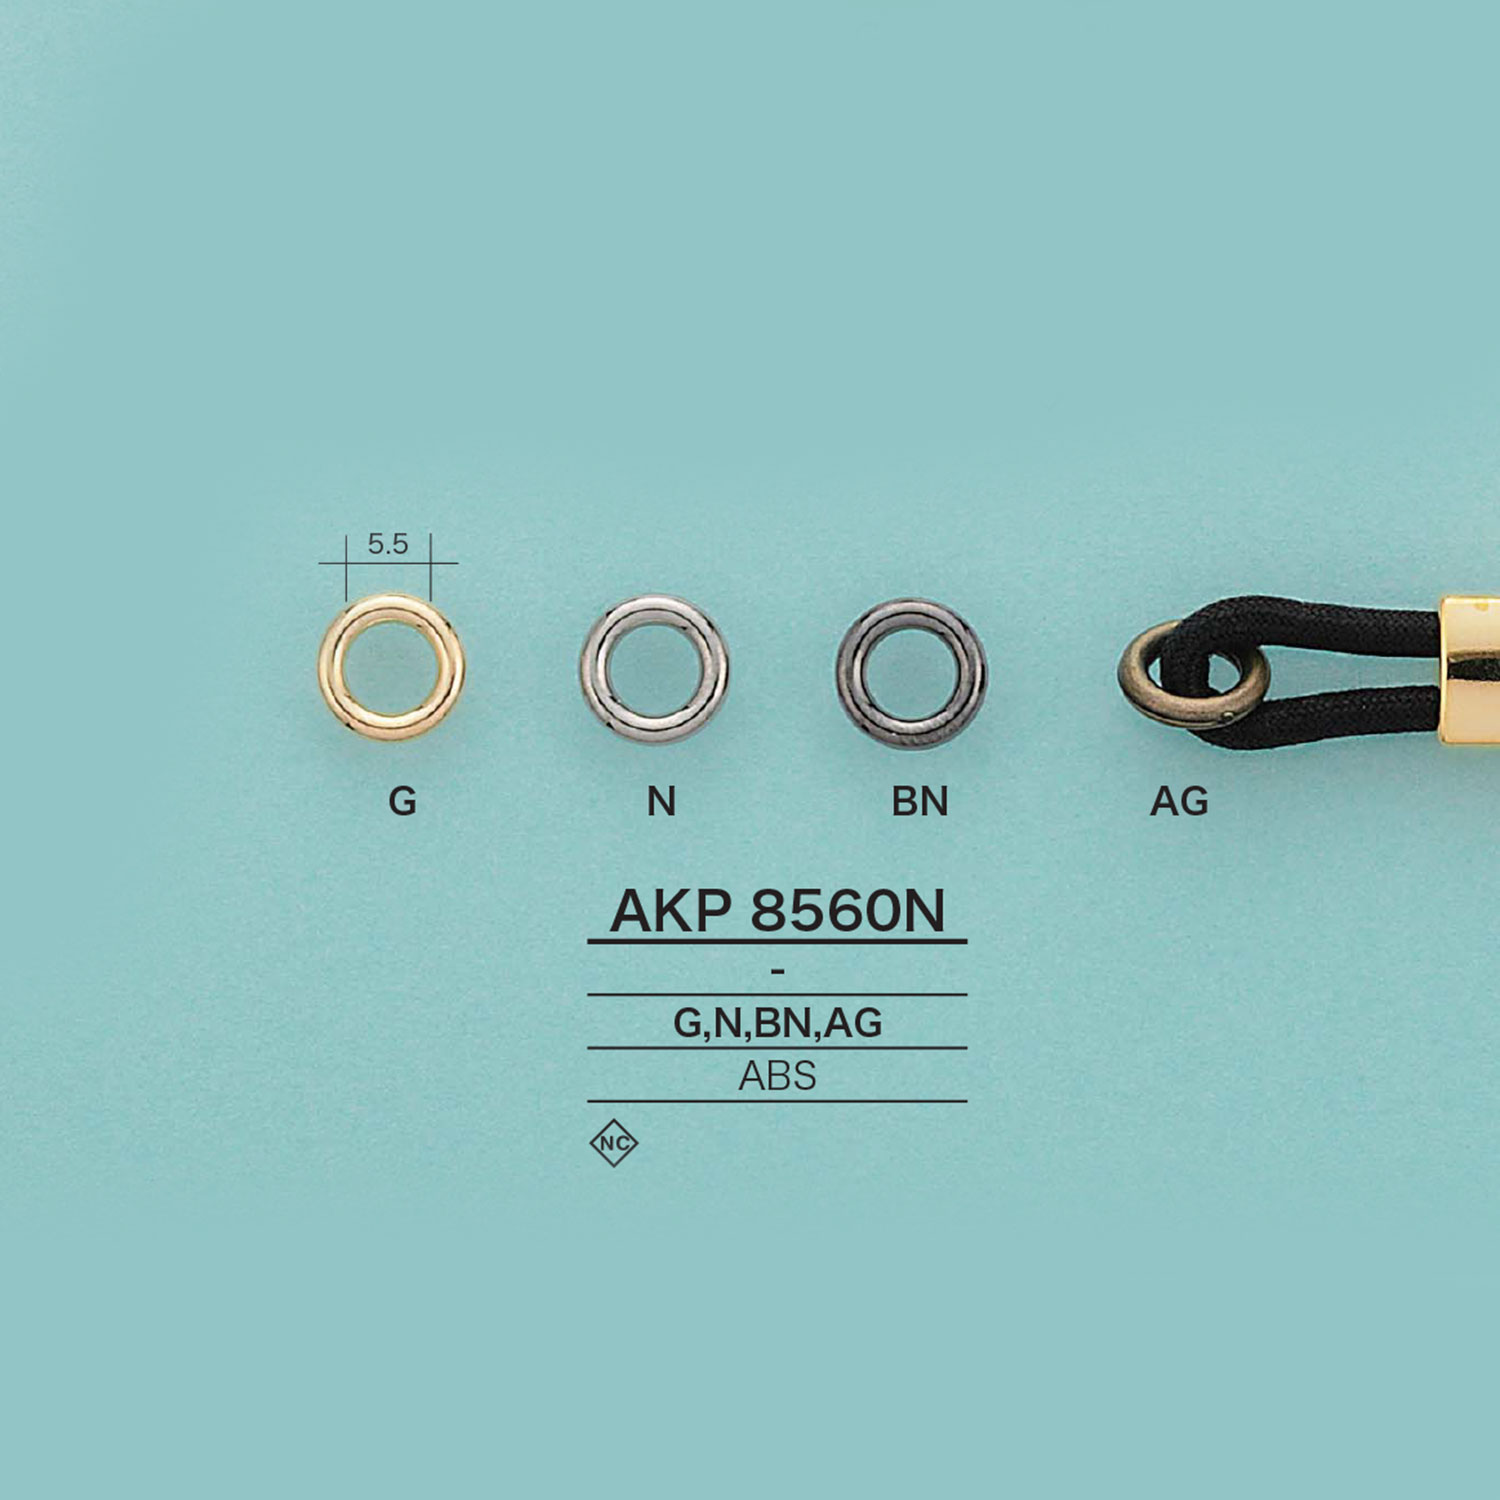 AKP8560N 環[扣和環] 愛麗絲鈕扣